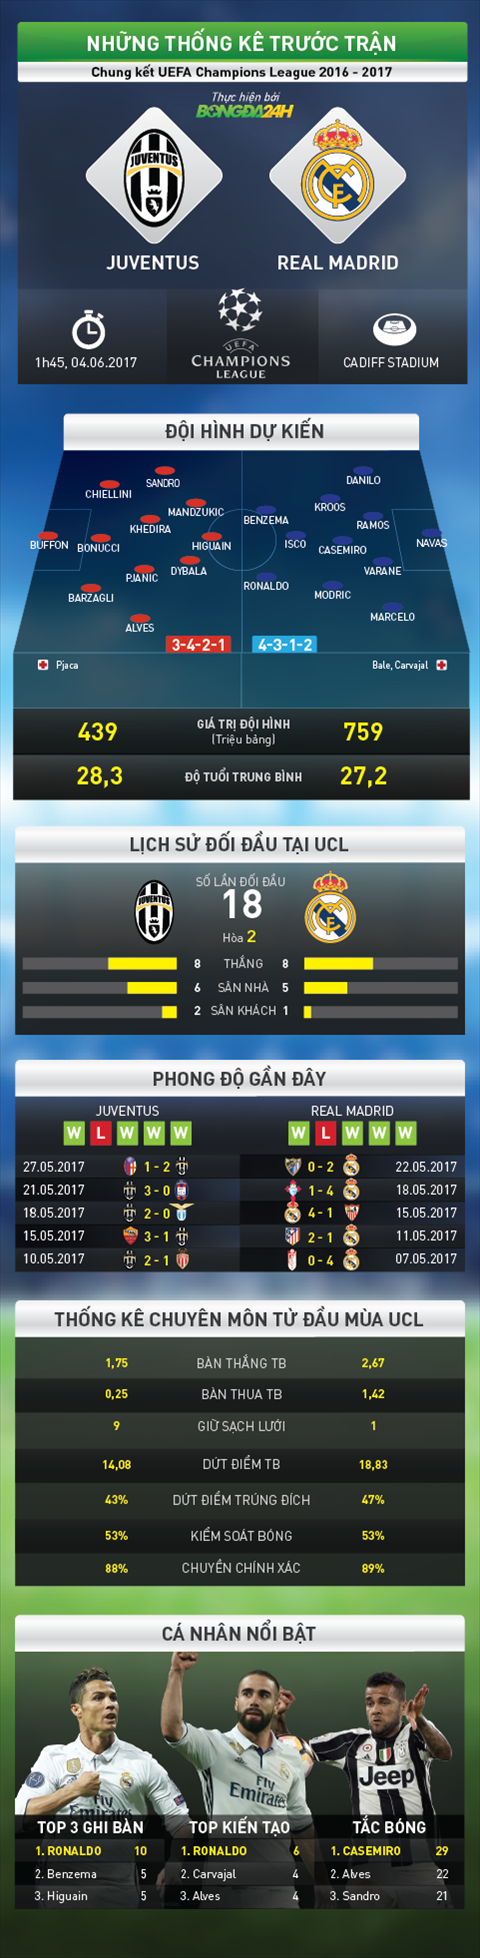 Infographic thong tin truoc tran dau Juventus vs Real hinh anh